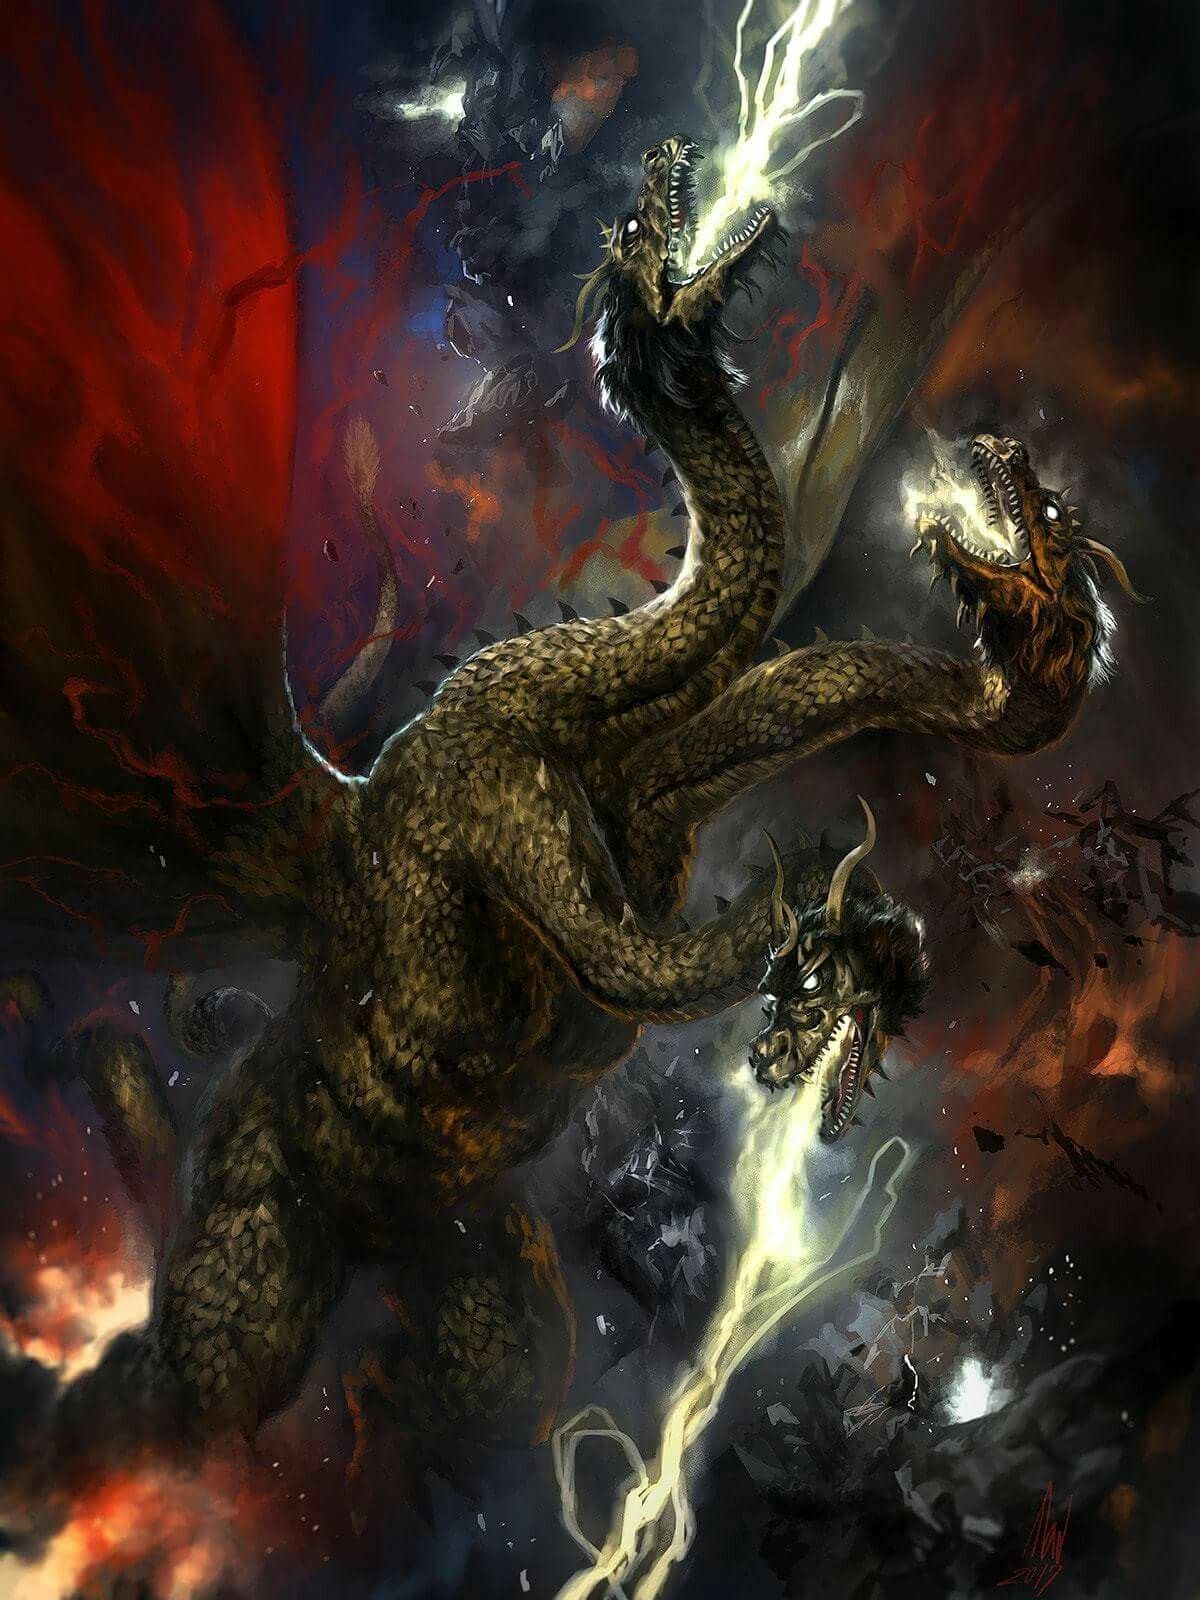 Unique King Ghidorah Wallpaper. Godzilla tattoo